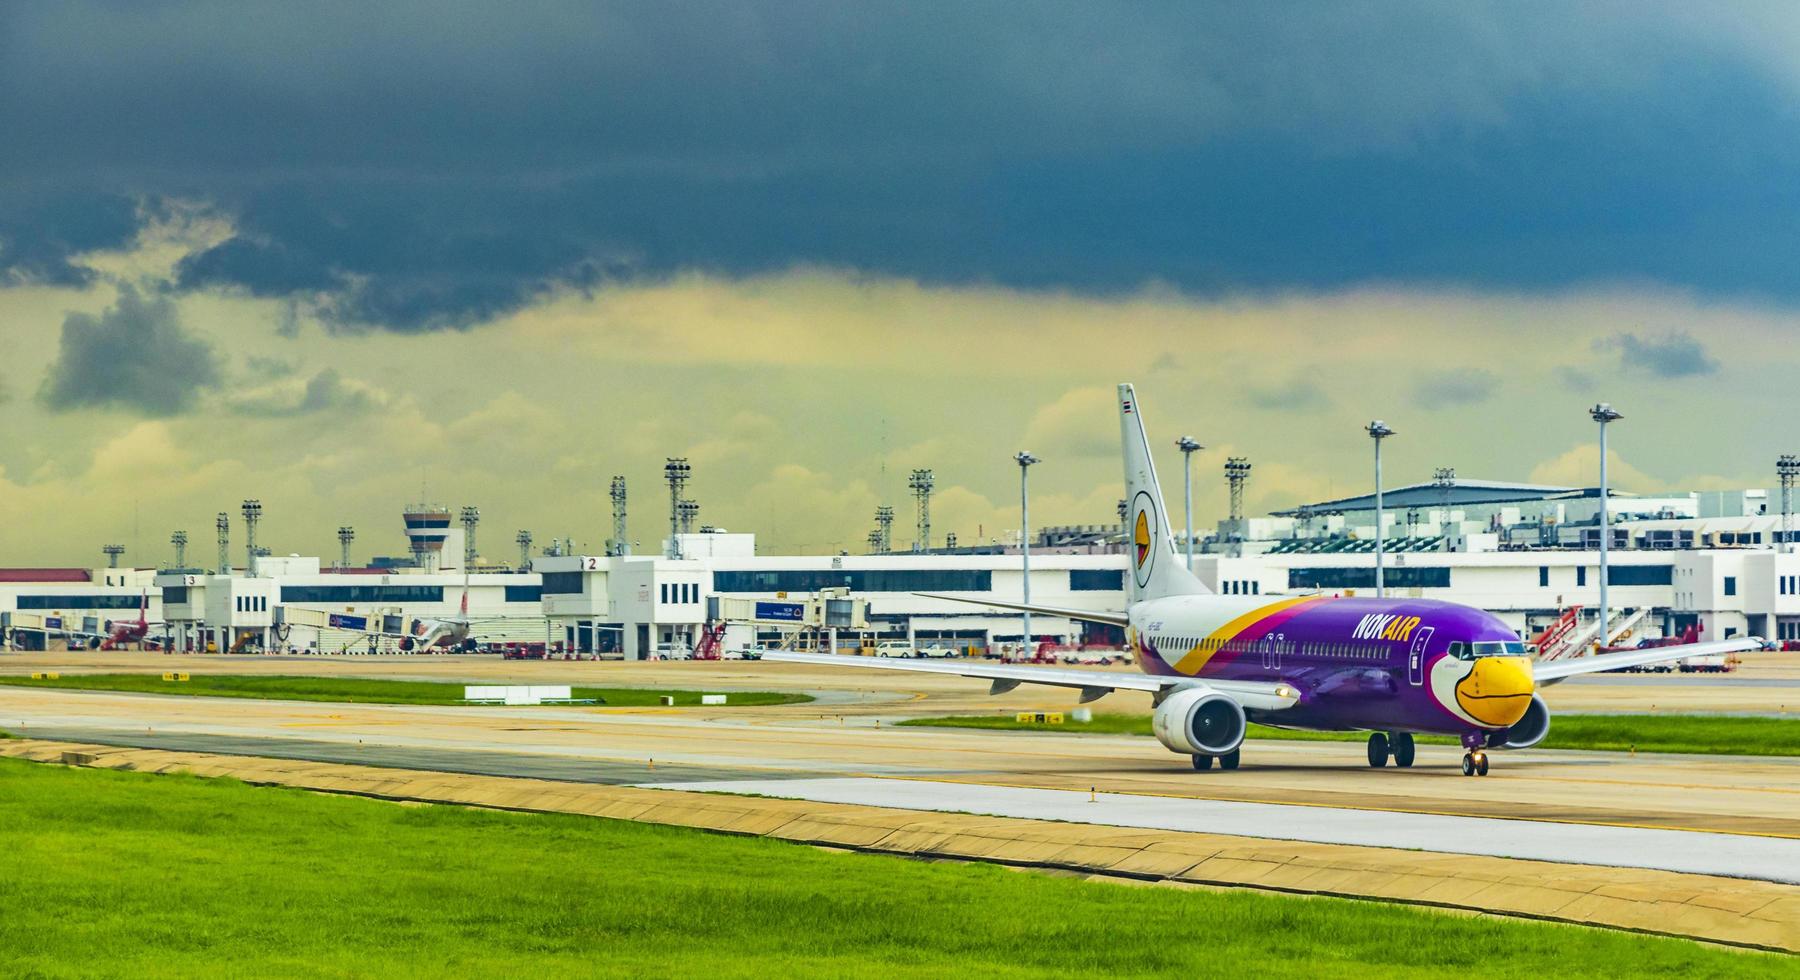 Nokia Airline während des Sturms am Flughafen Bangkok-Suvarnabhumi, Thailand, 2018 foto